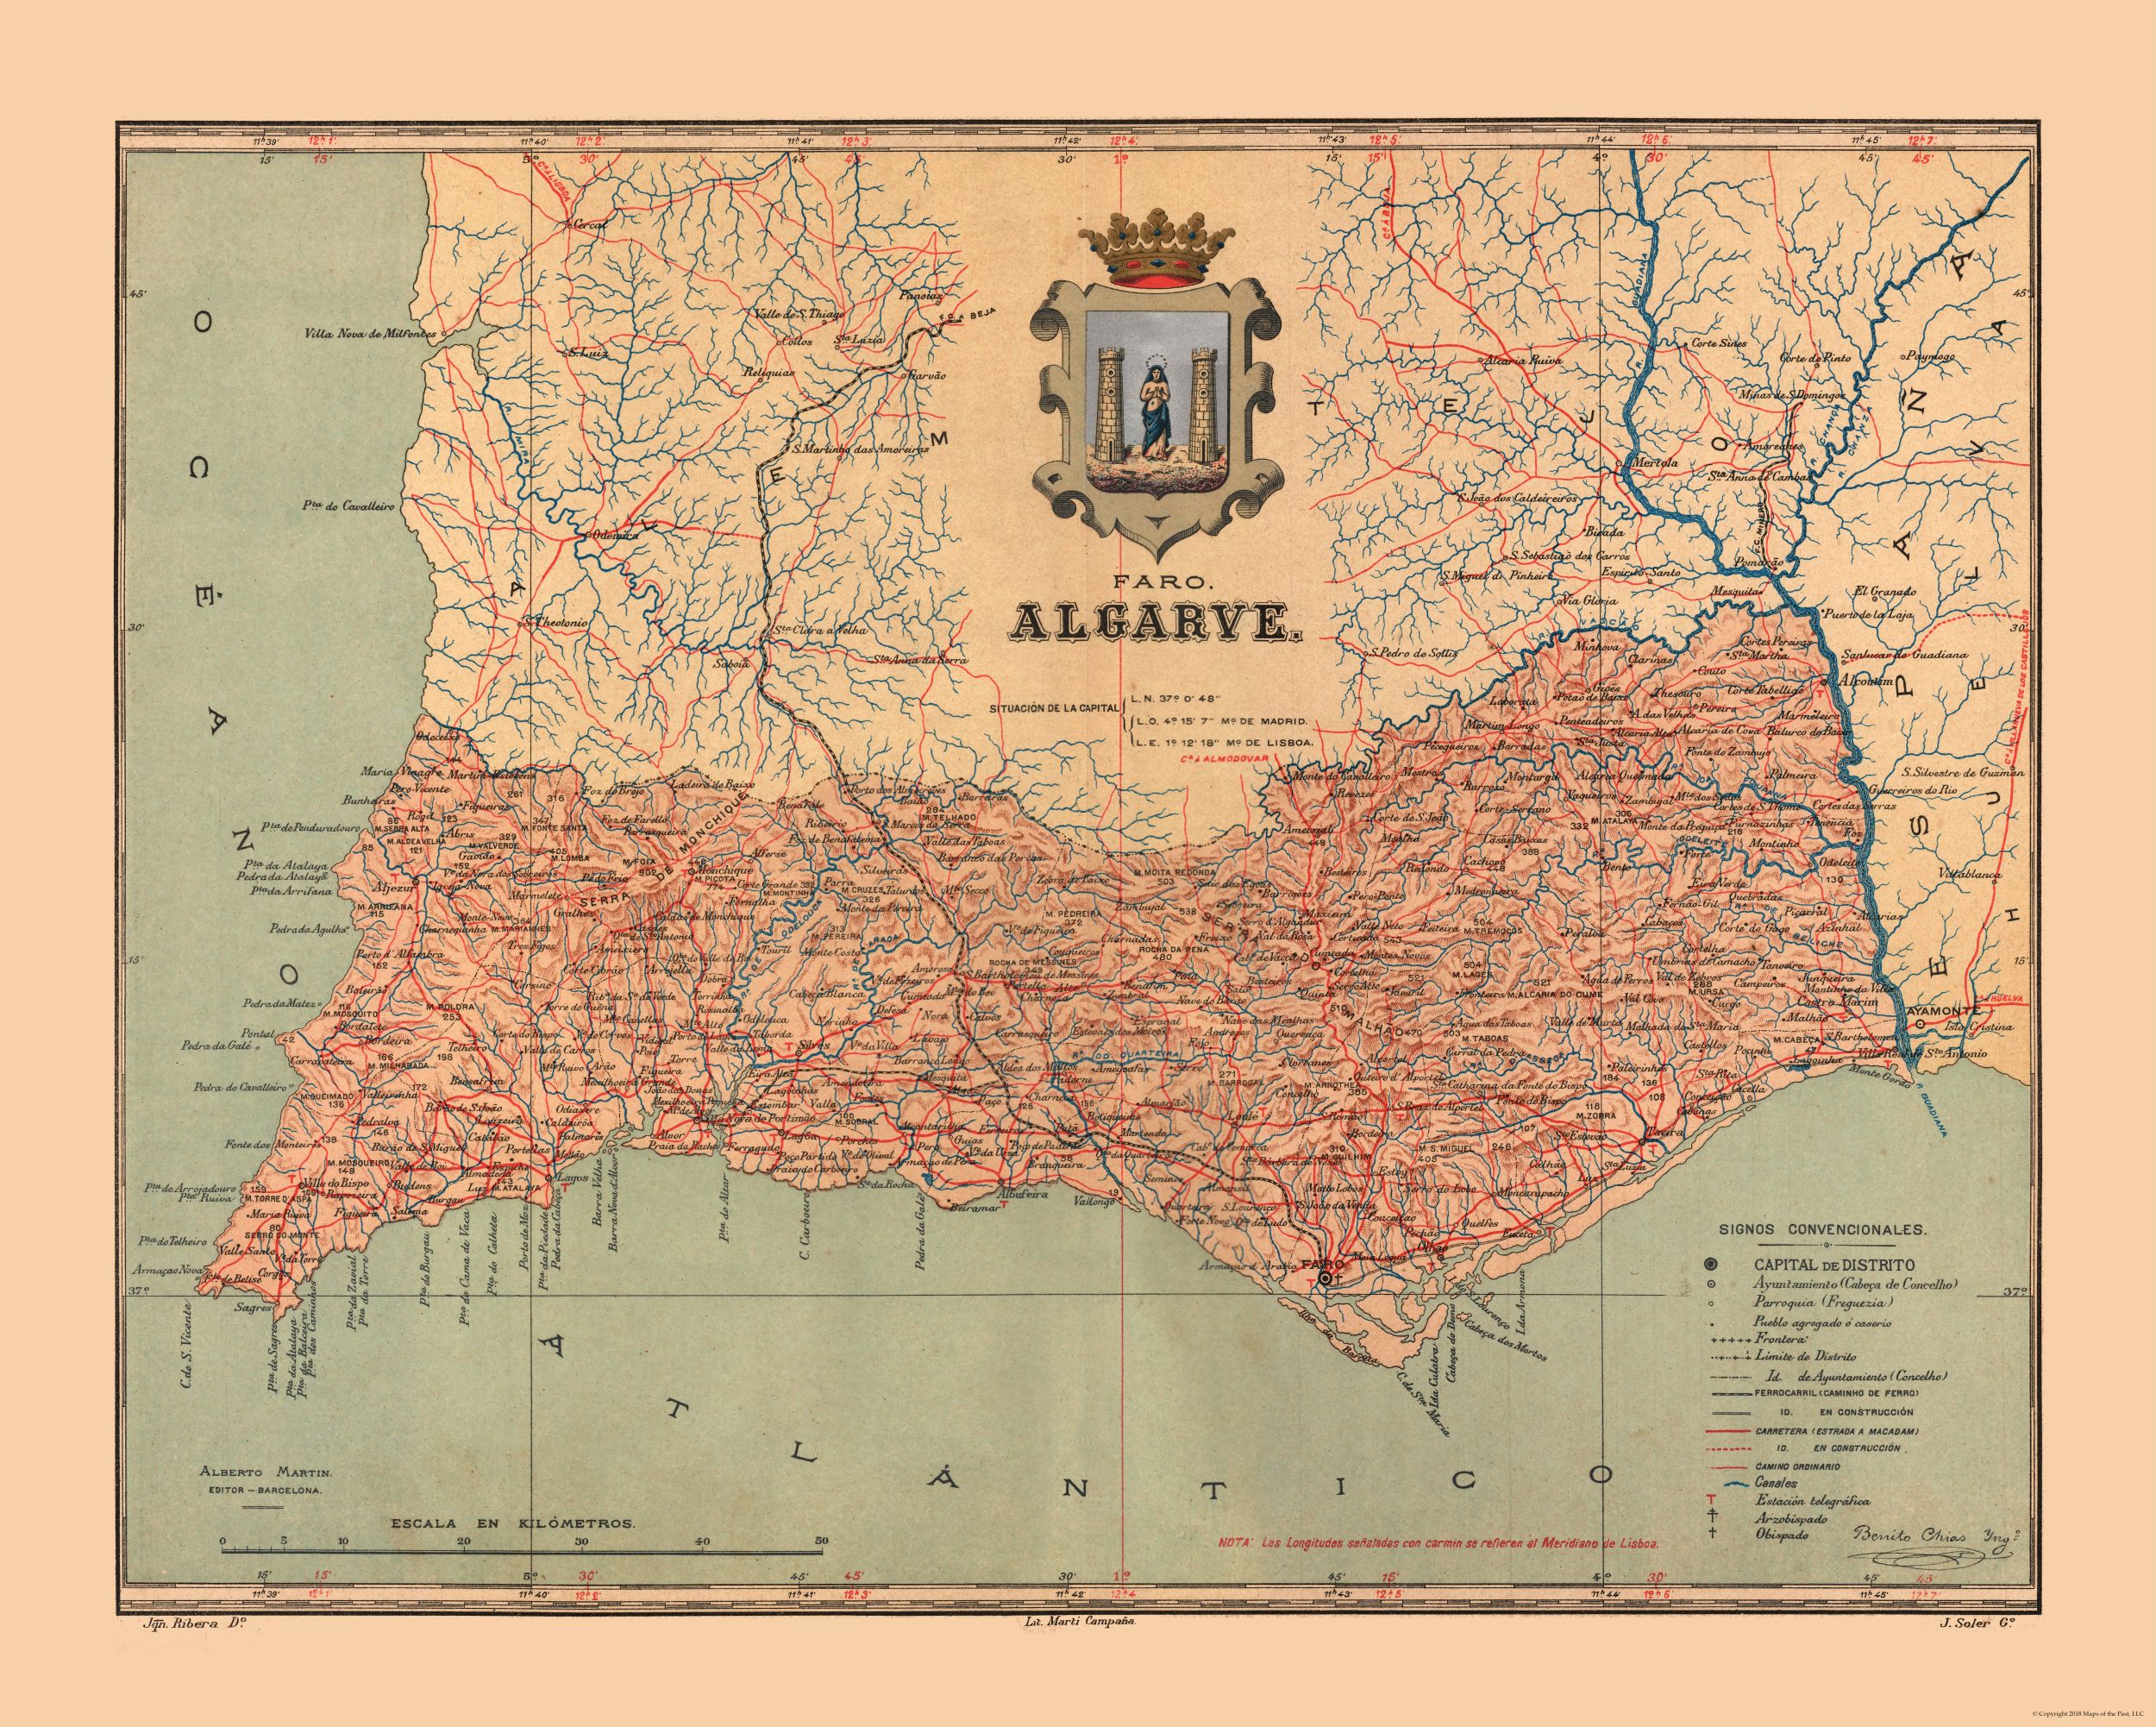 Algarve Portugal - Martine 1904 - 23.00 x 28.72 - Glossy Satin Paper 